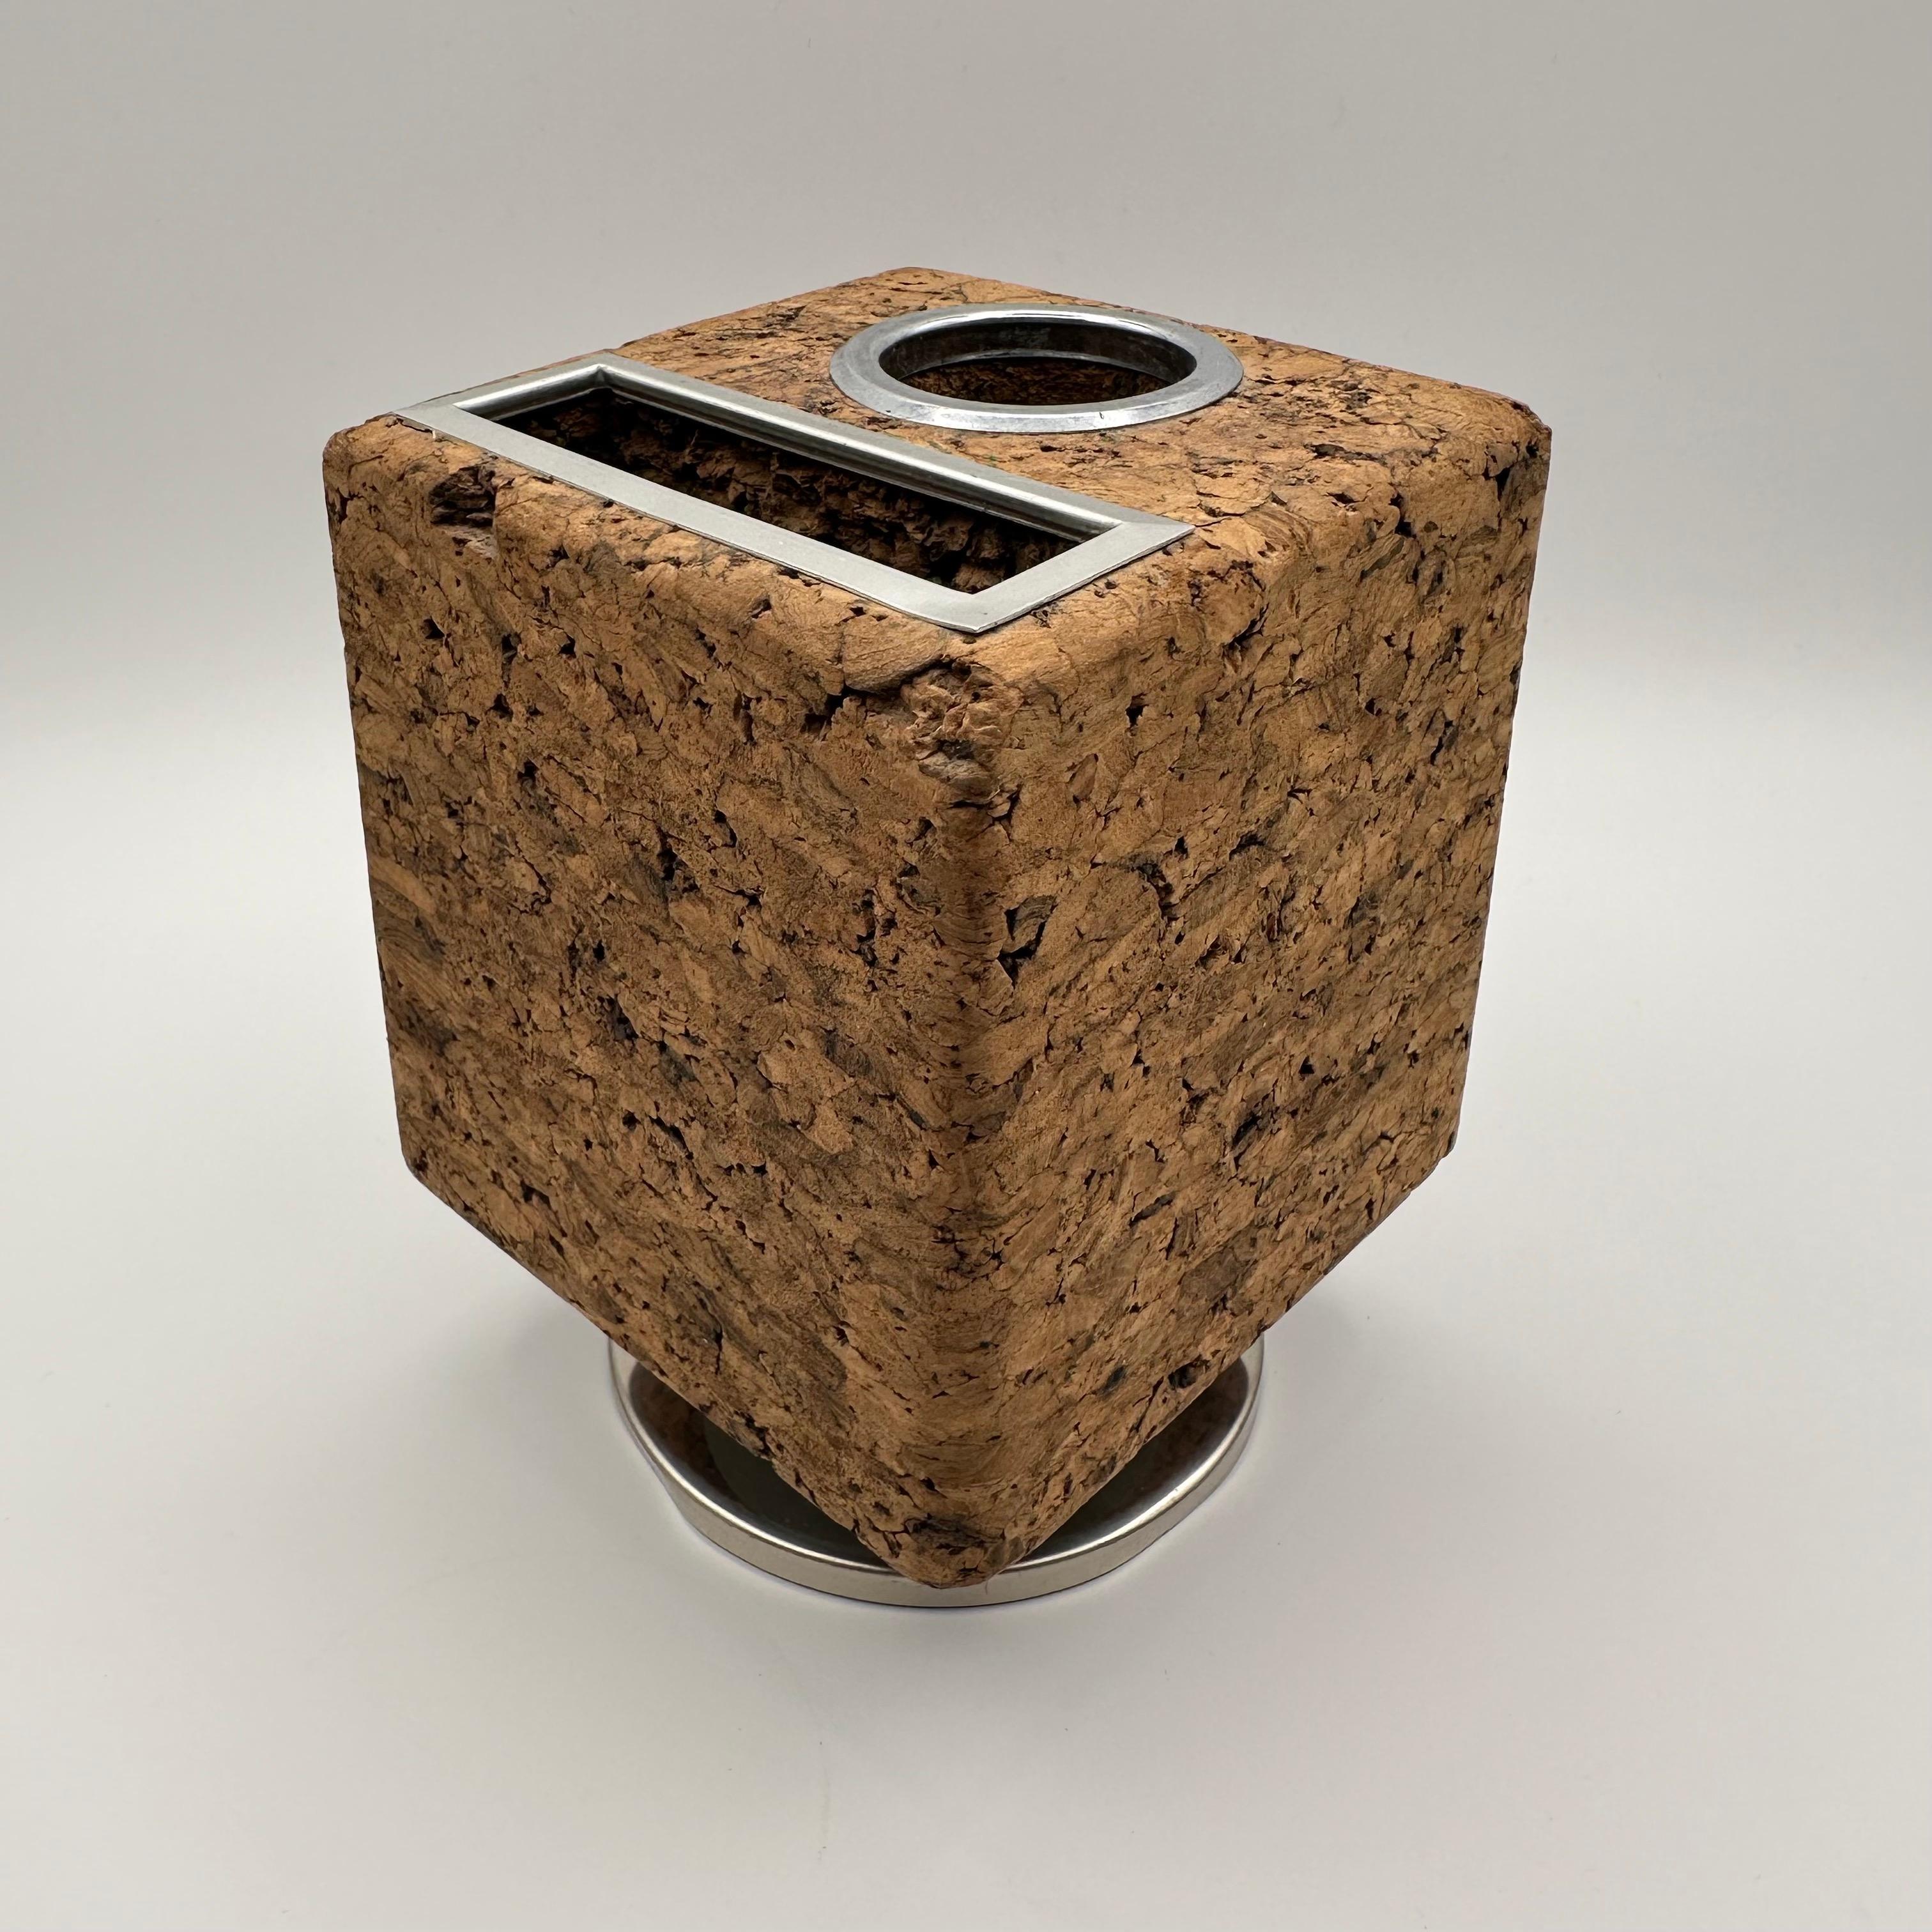 Vintage mid century modern cube shaped desk organizer or desk accessory in cork and chrome. Mit zwei Fächern, eines für Stifte und Bleistifte, das andere für einen kleinen Notizblock. Heldly wird auf einem drehbaren Sockel gehalten, so dass Sie das